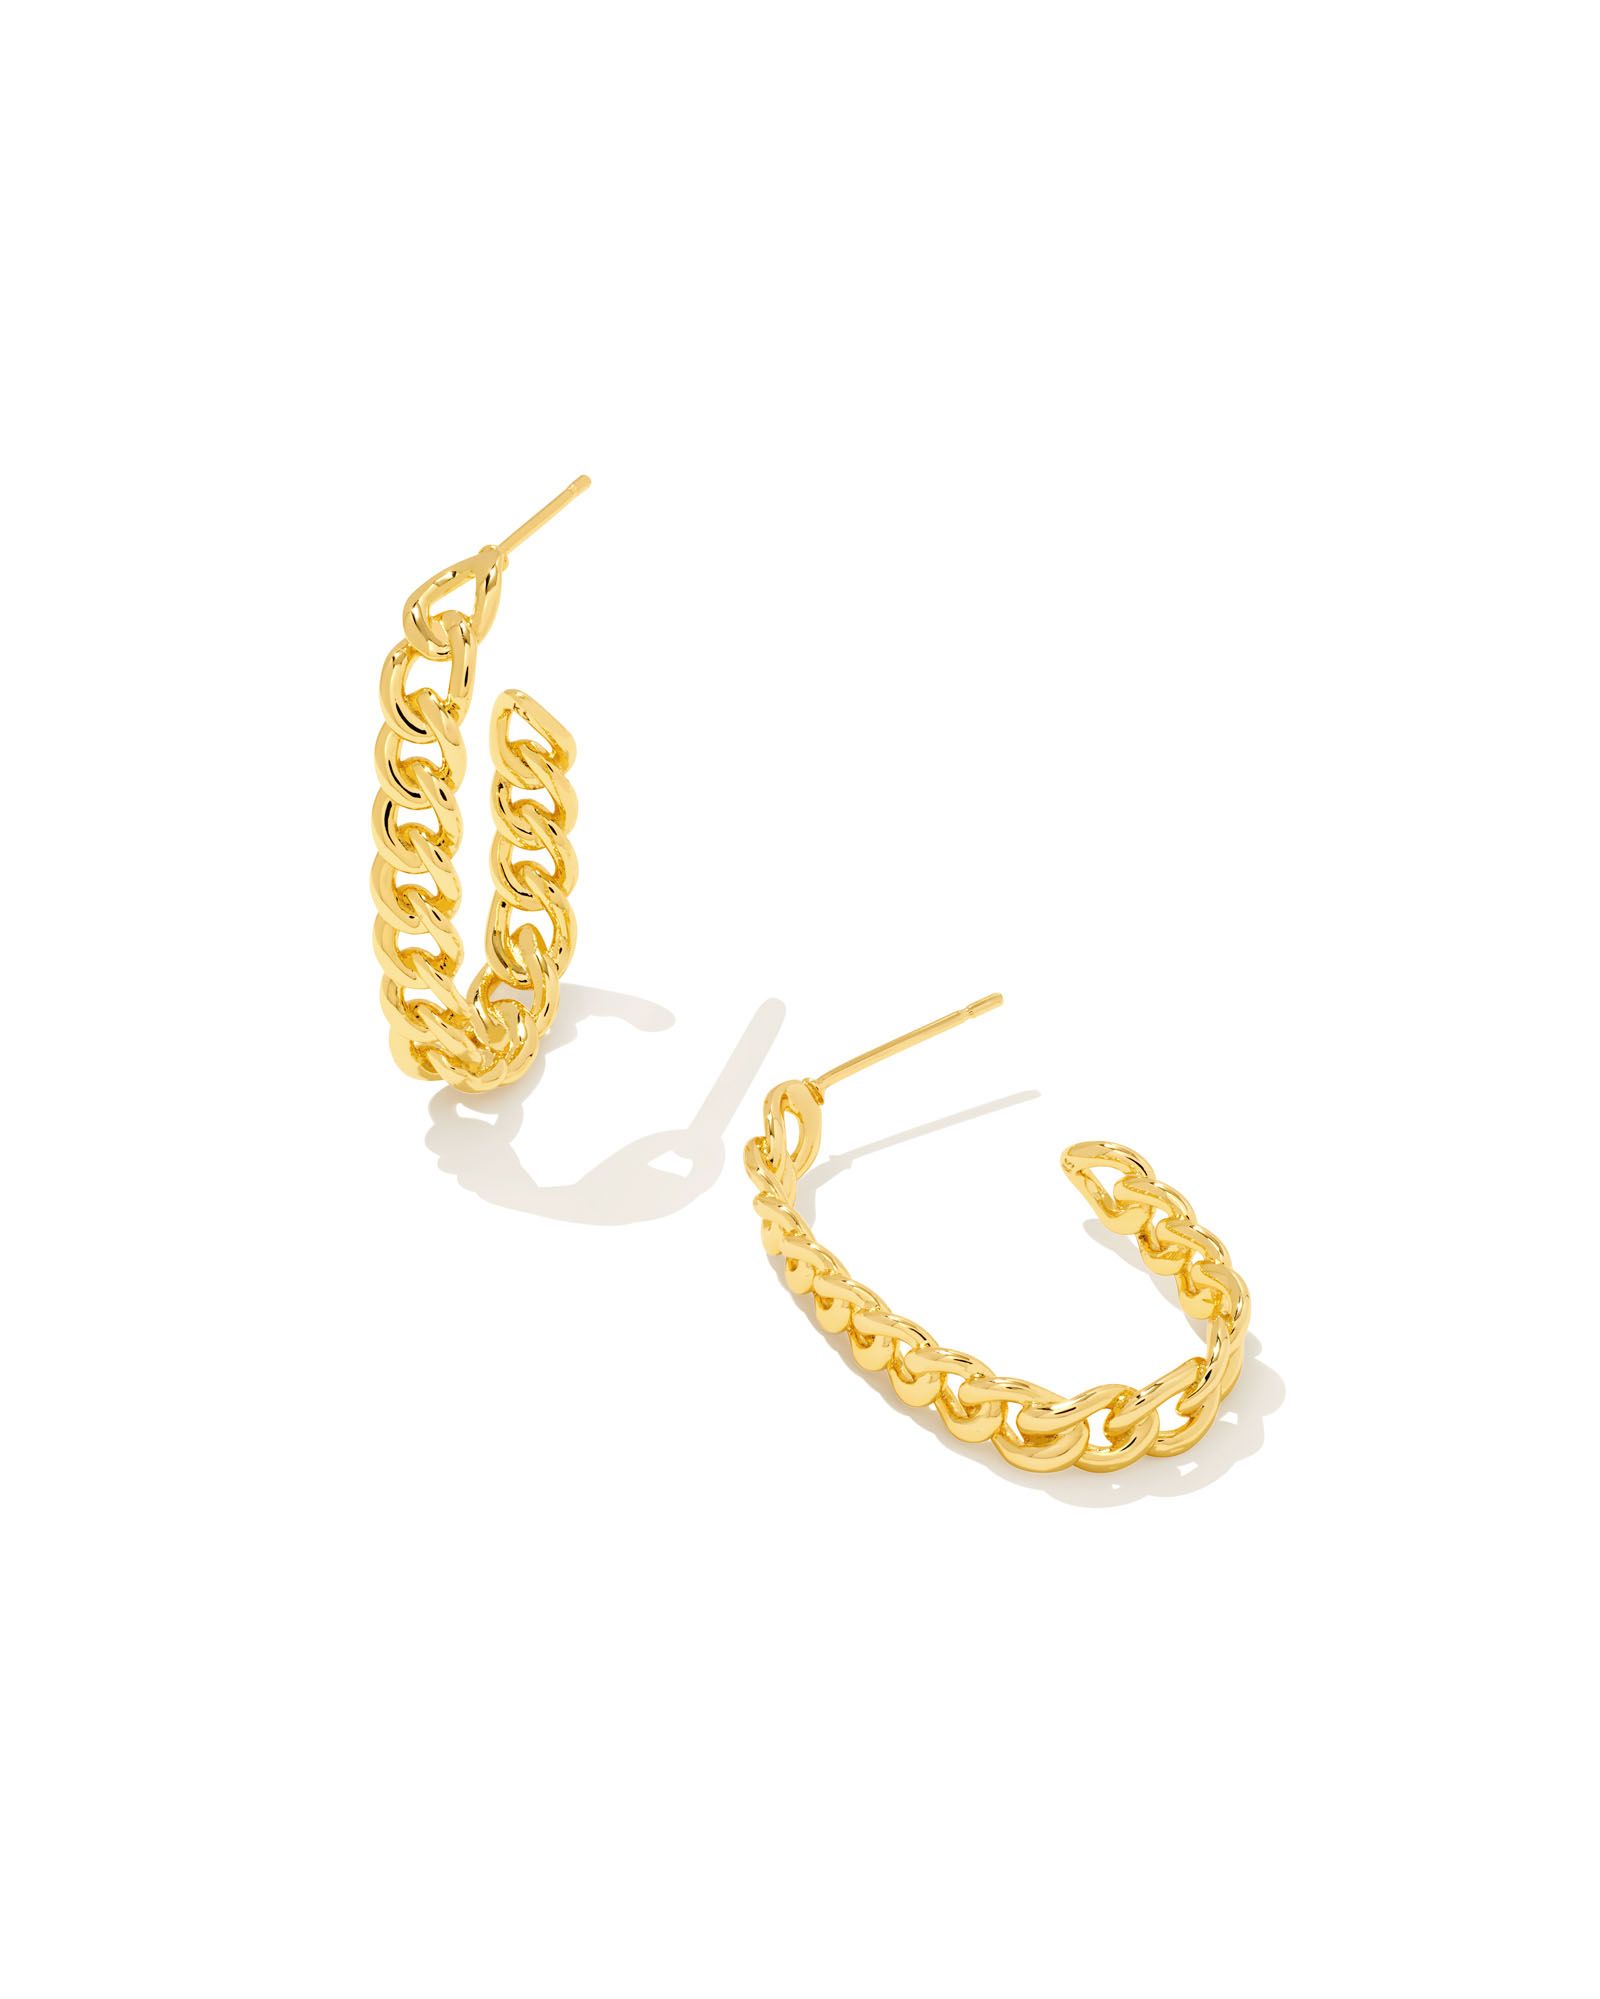 Grier Hoop Earrings in Gold | Kendra Scott | Kendra Scott